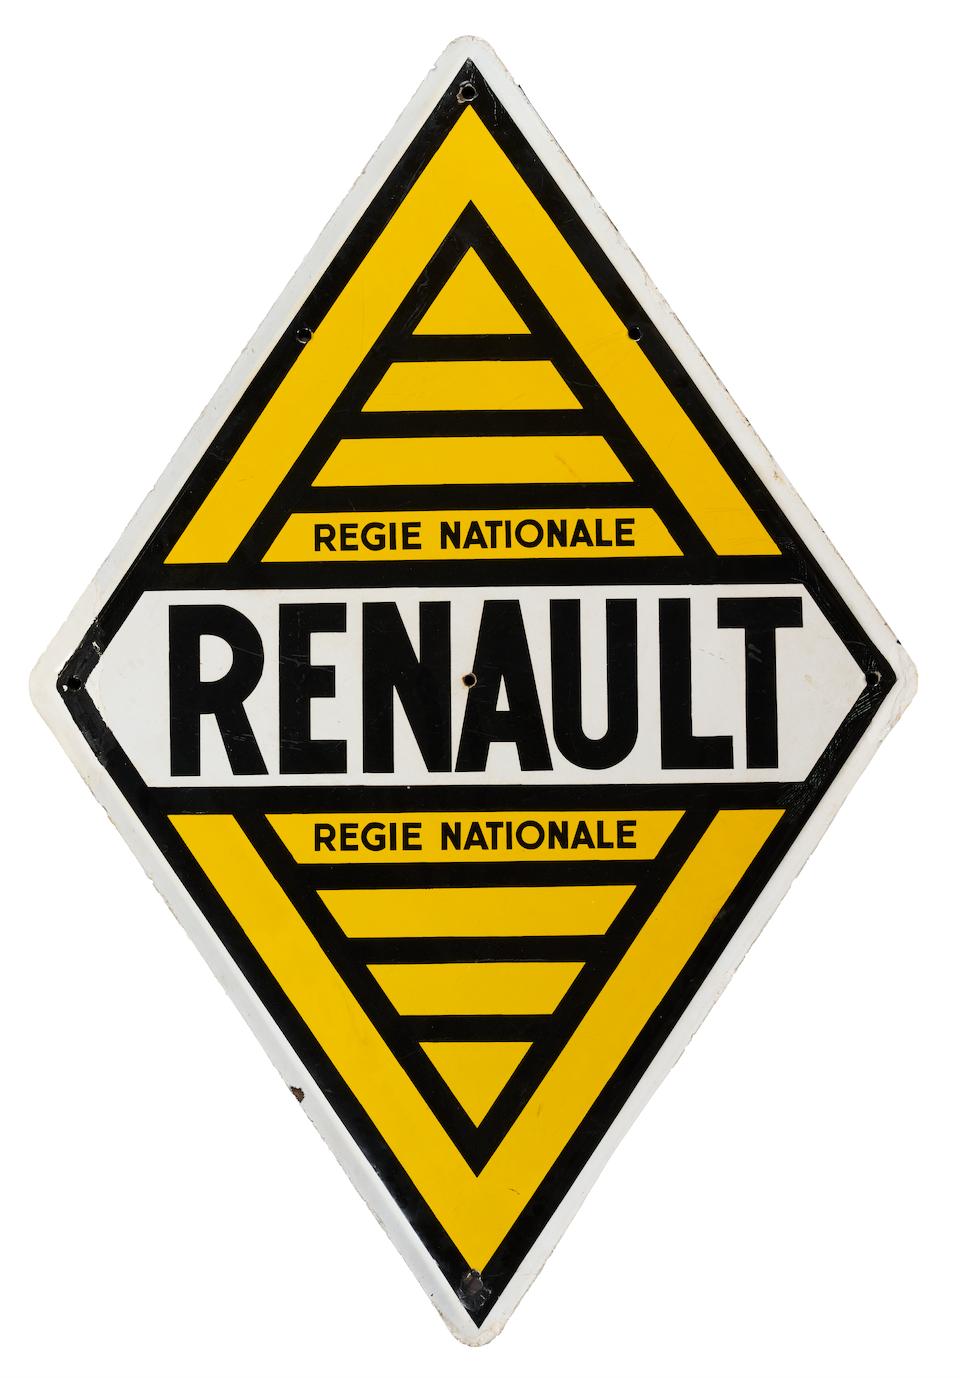 RENAULT Plaque émaillée, années 60 - Image 2 of 2